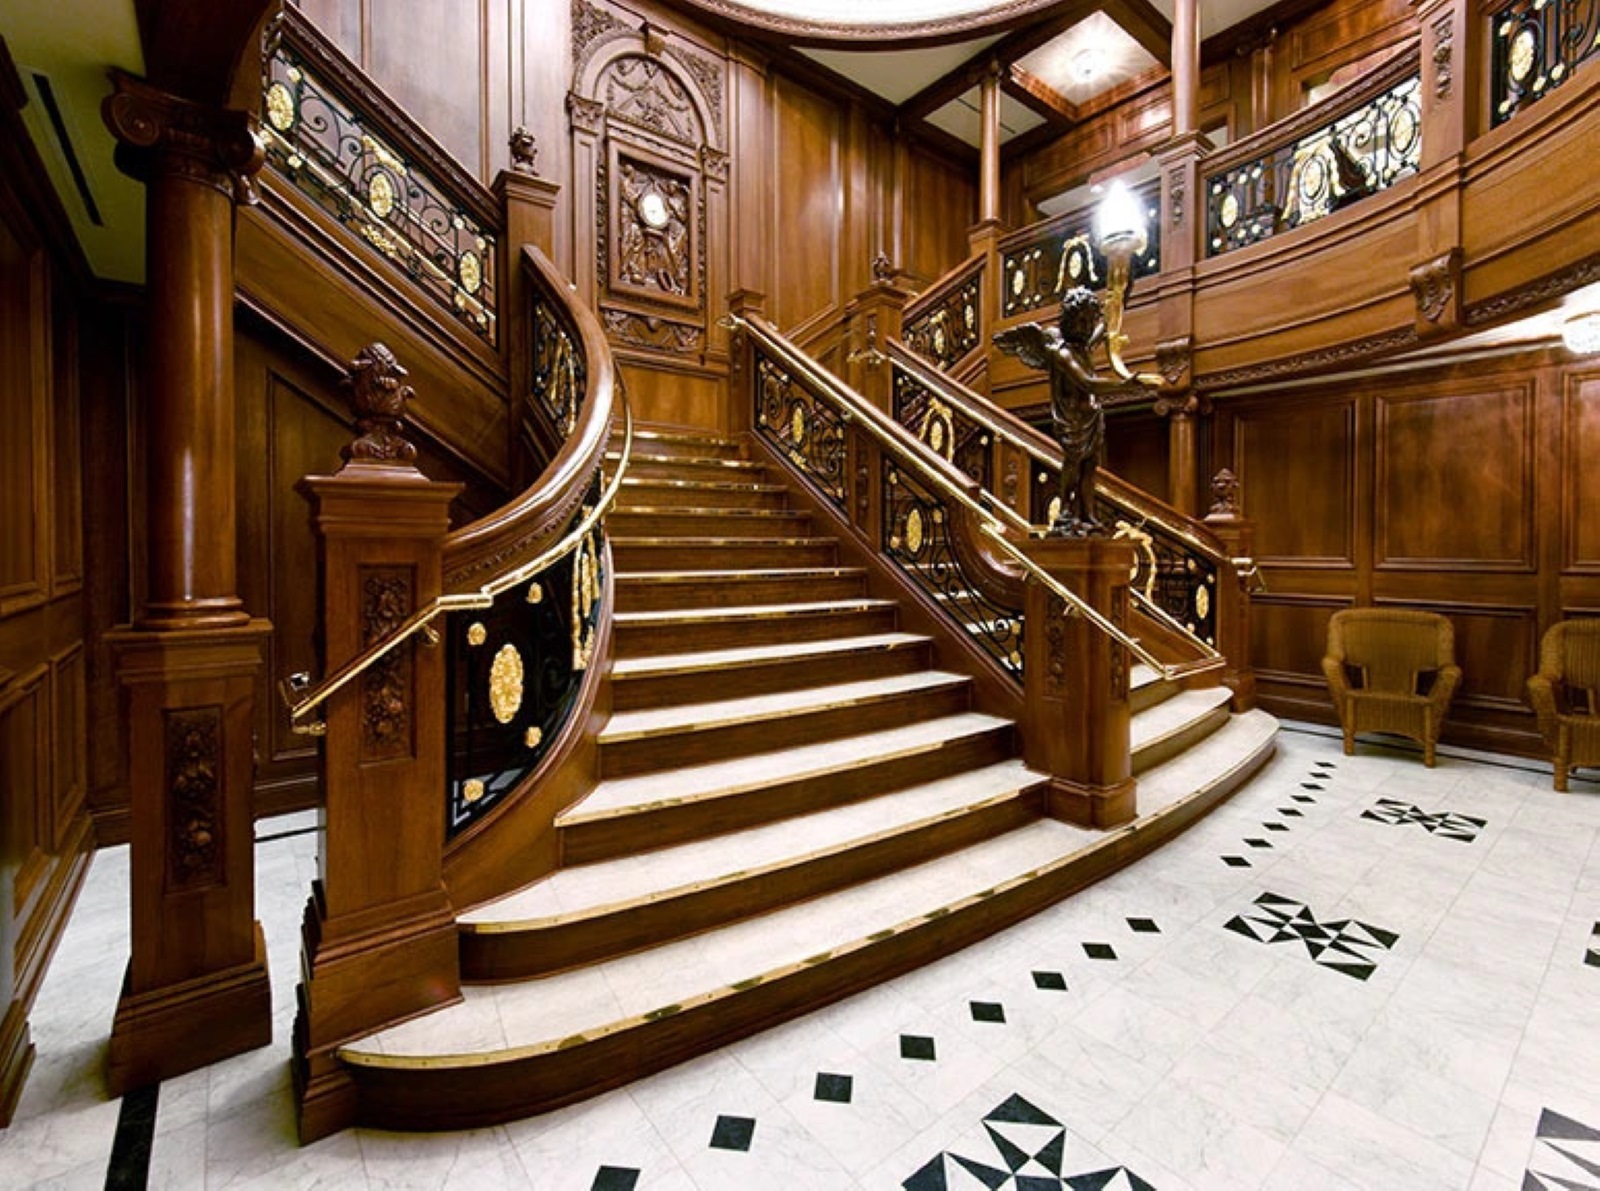 A replica of the Titanic's grand staircase at the Titanic Branson